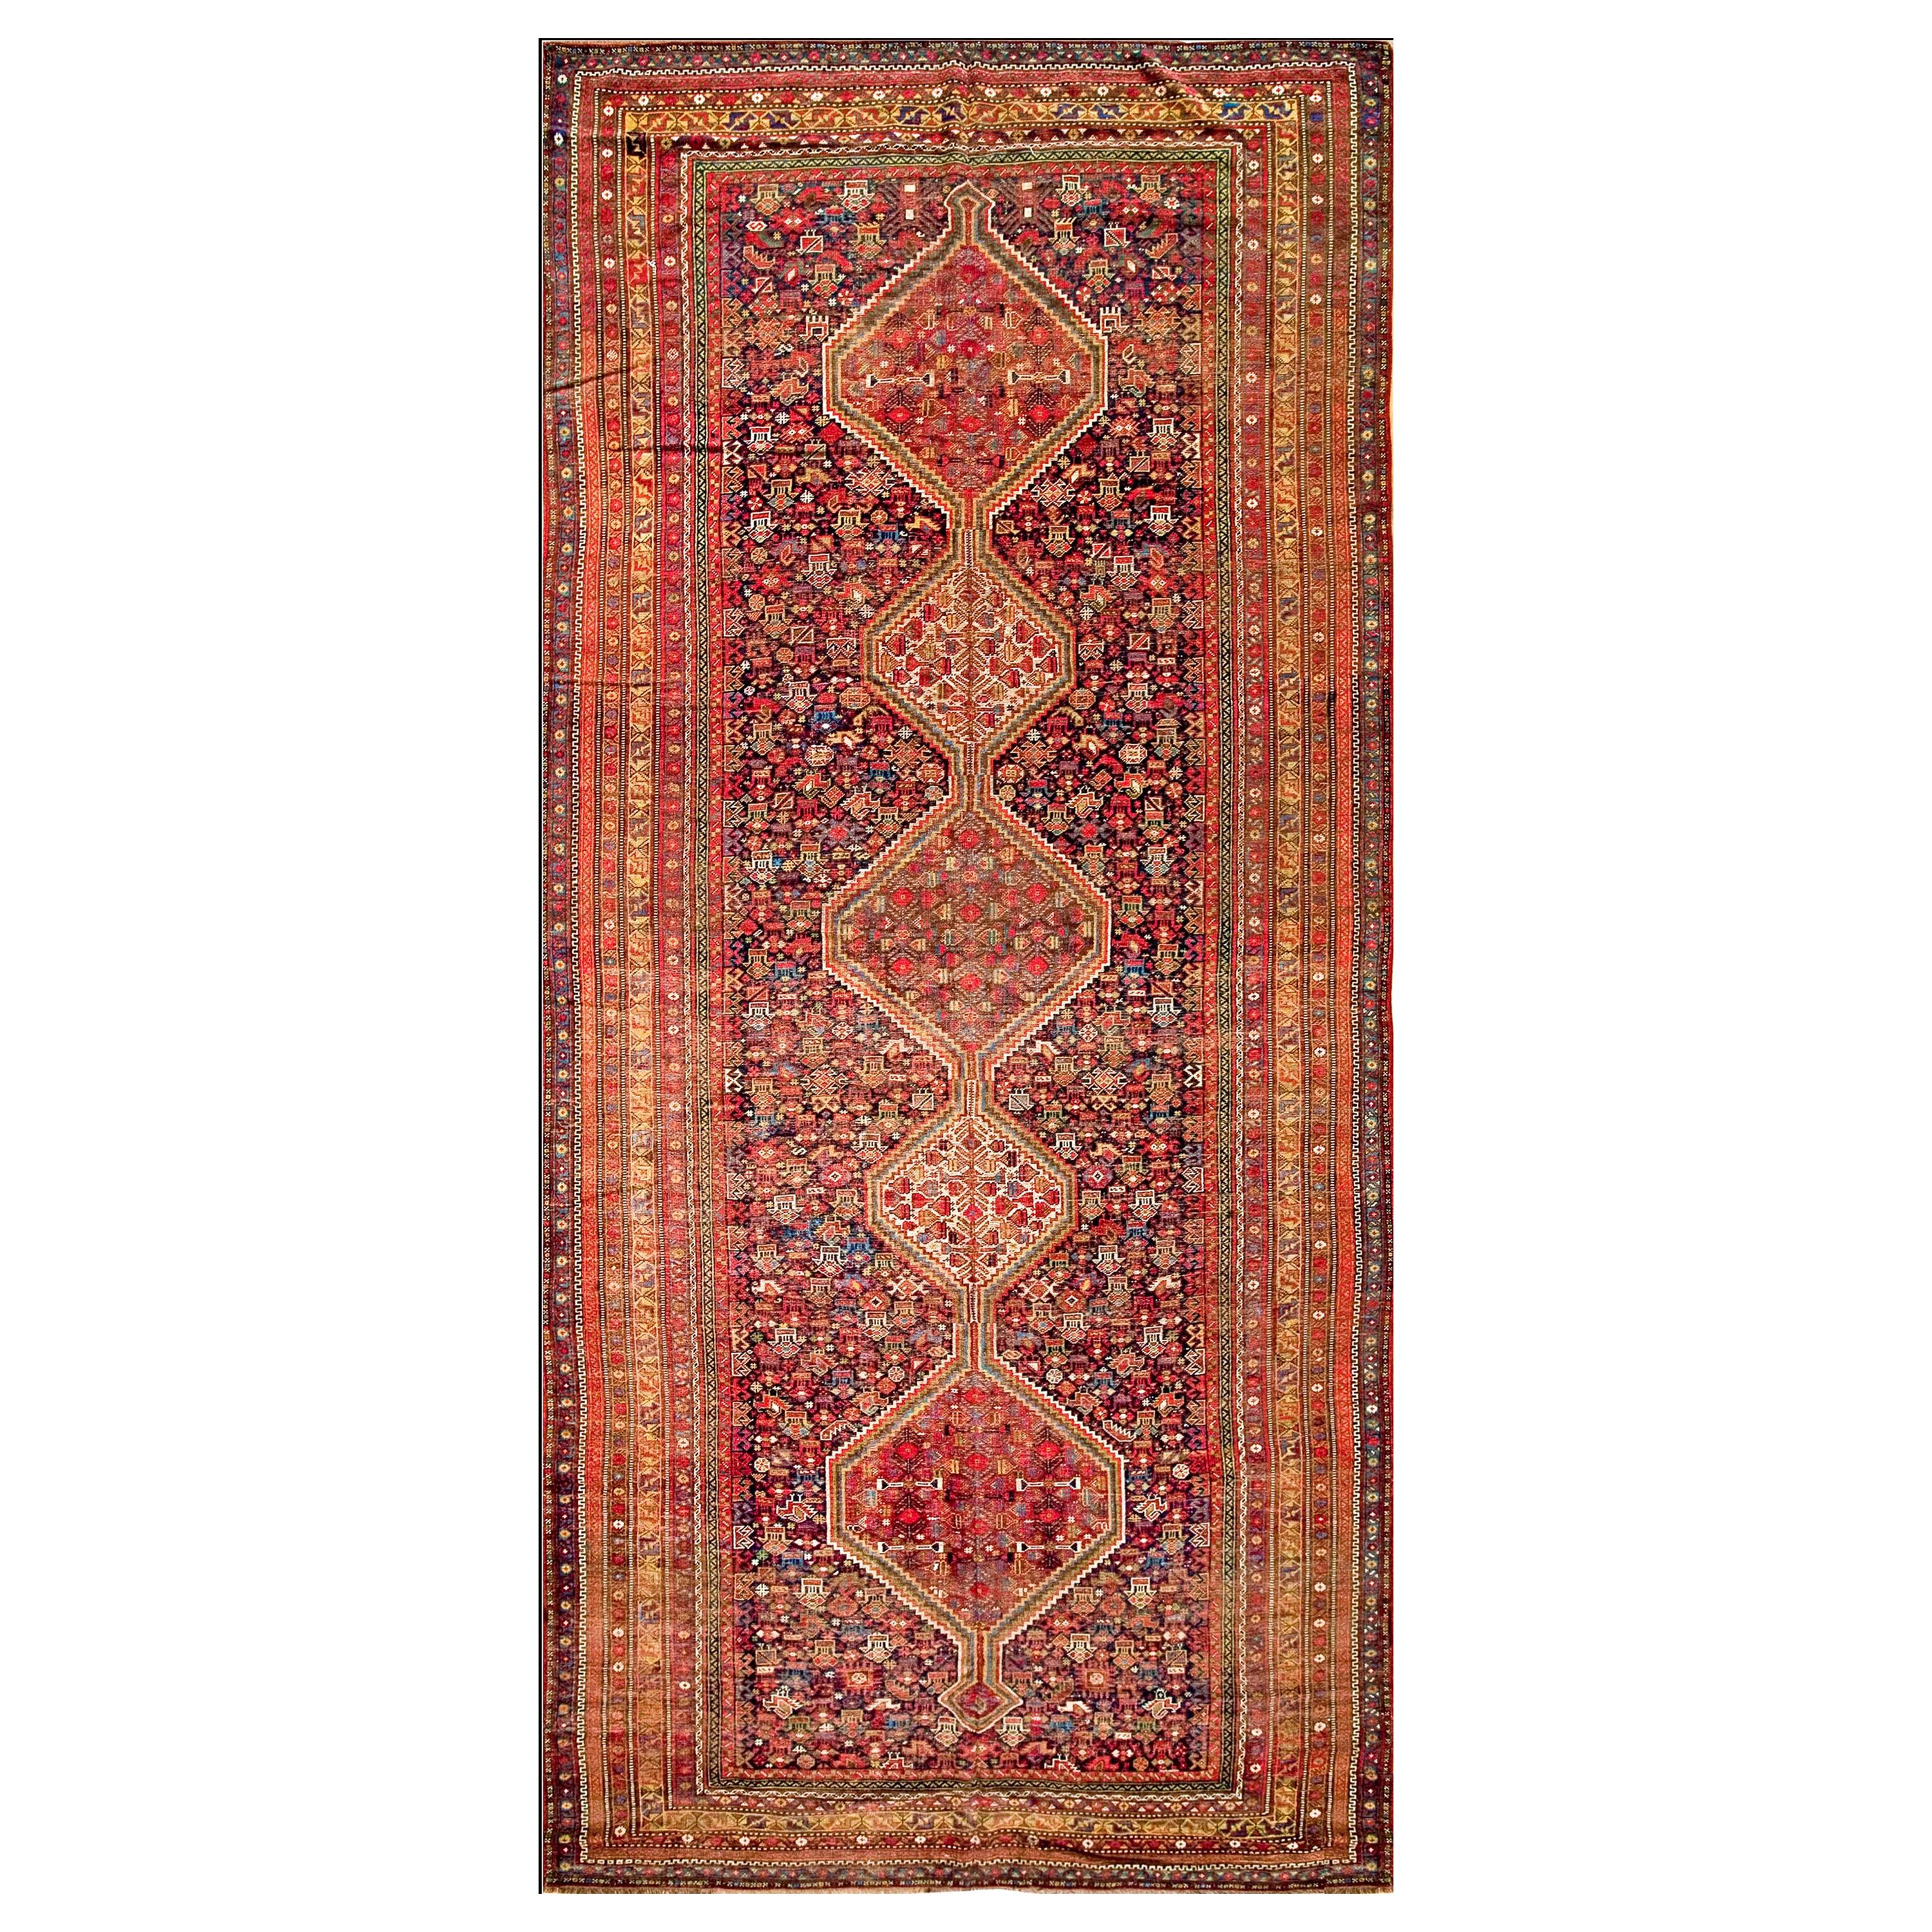 Persischer Ghashgaie-Galerie-Teppich aus dem frühen 20. Jahrhundert (6'6" x 14'4" - 198 x 437)